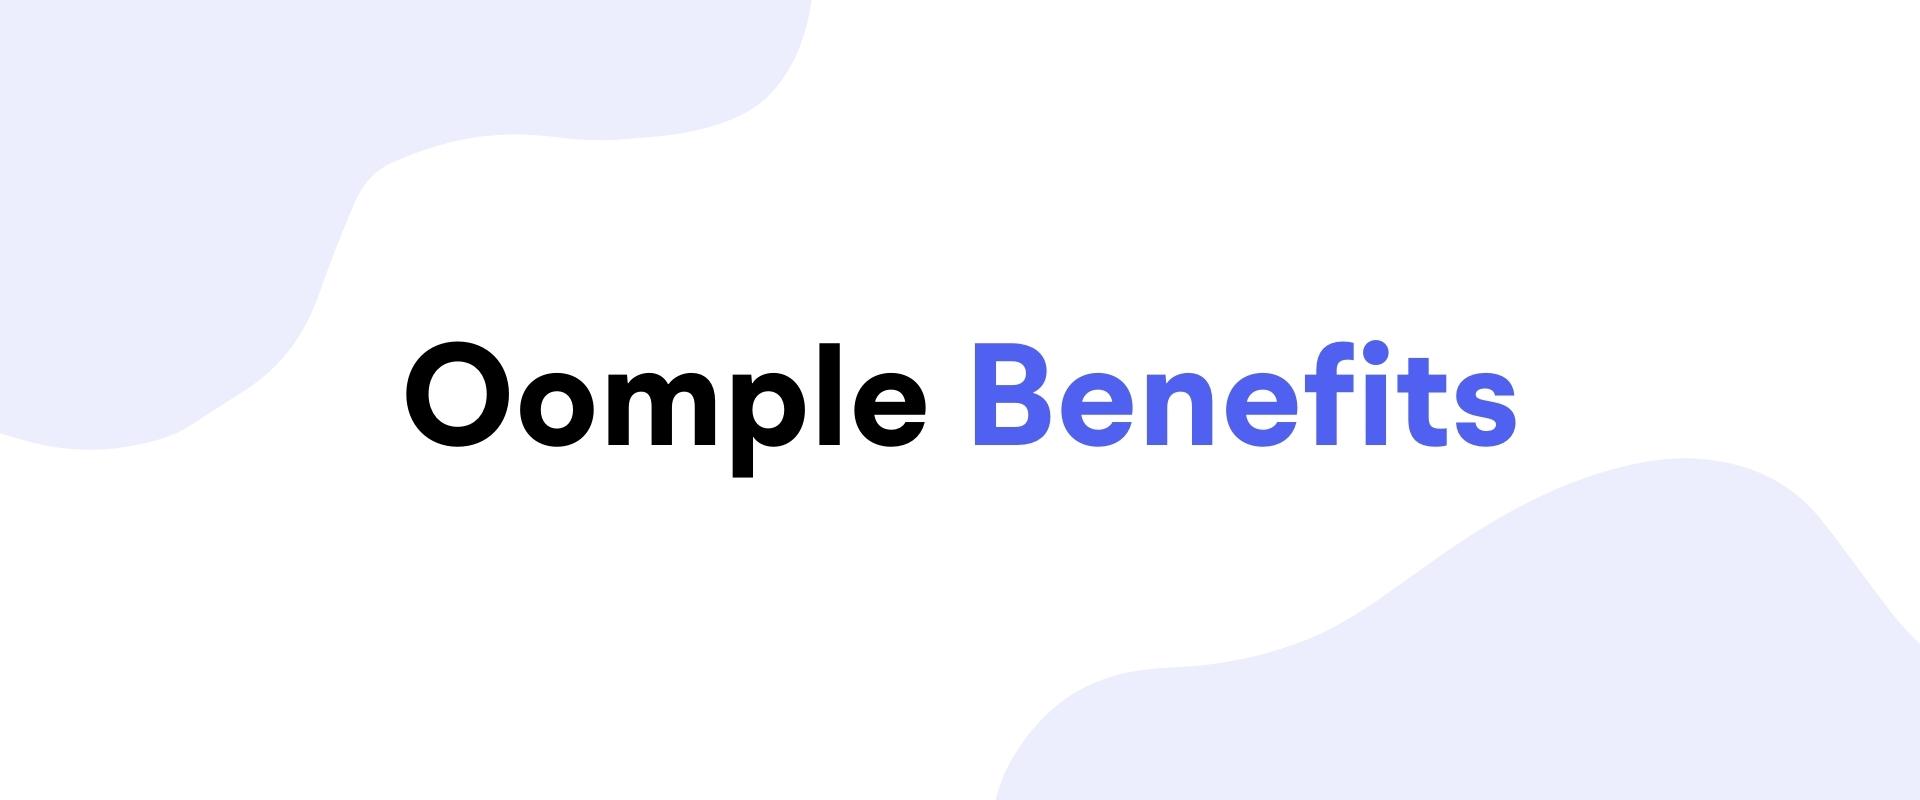 Oomple Benefits website link